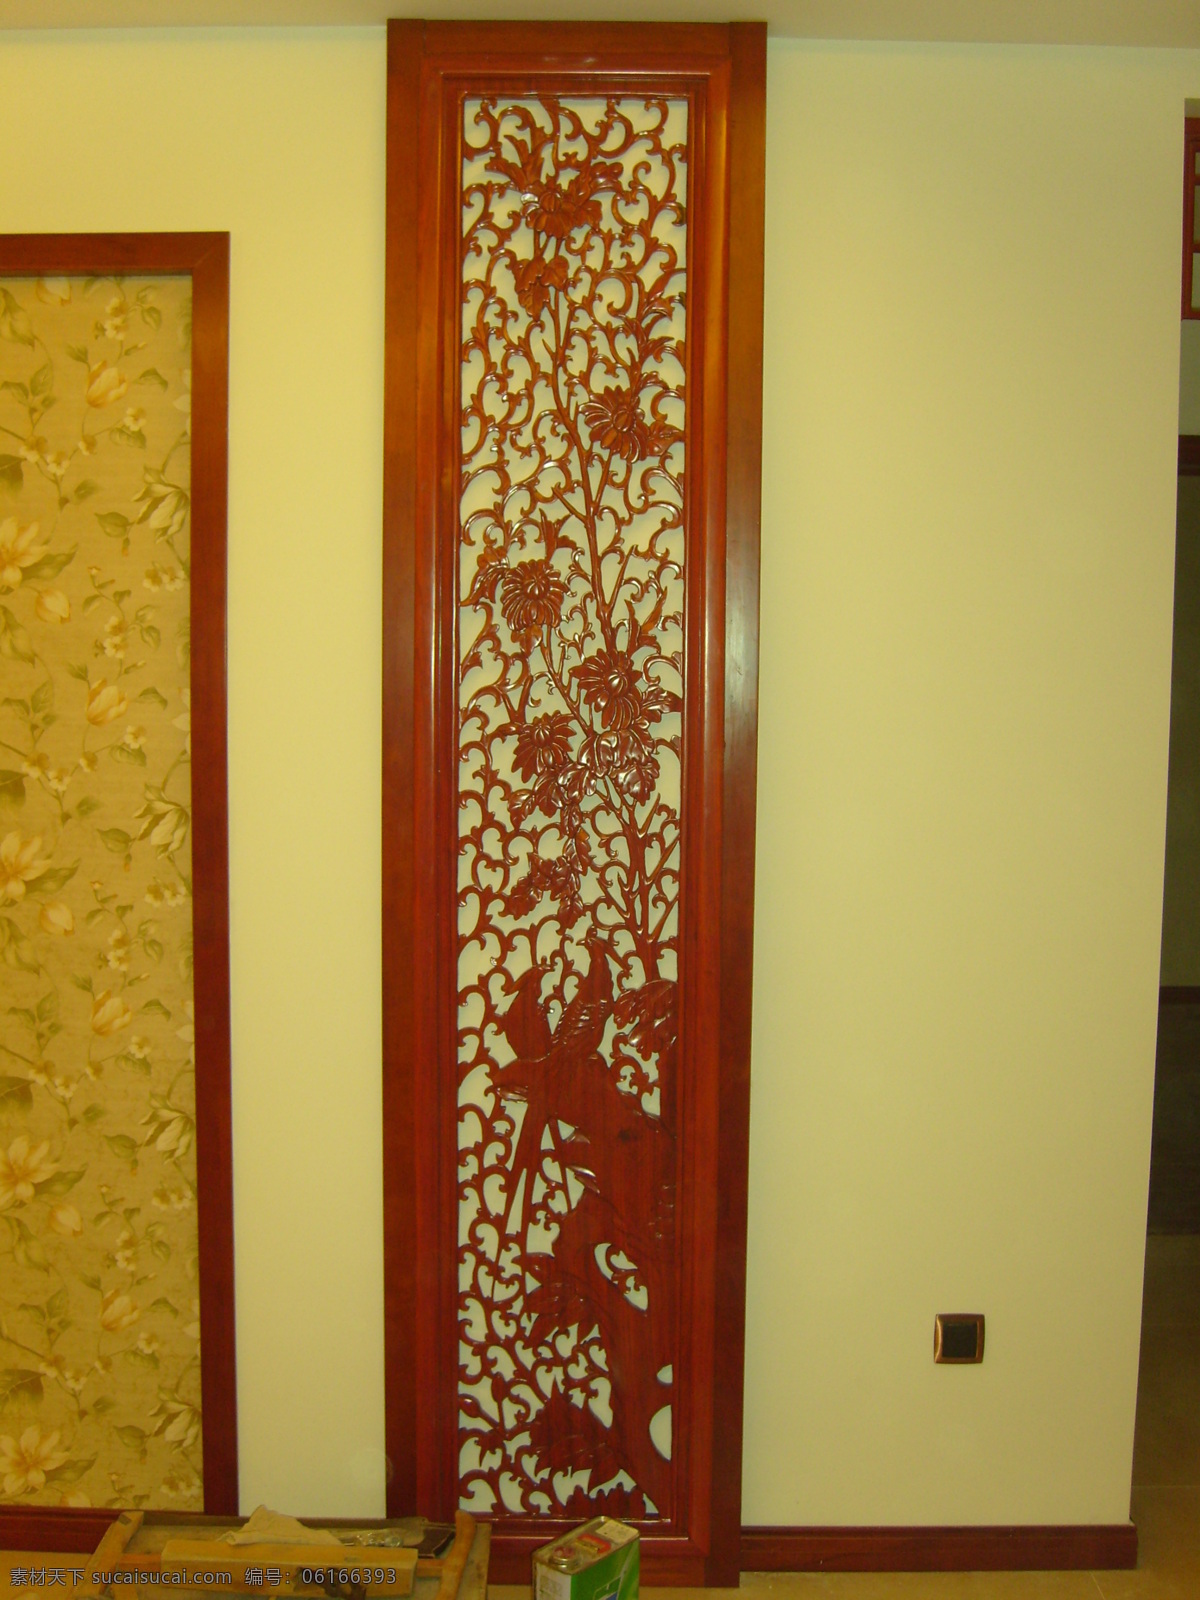 中式花格 花格 红木花格 壁纸 中式壁纸 环境设计 室内设计